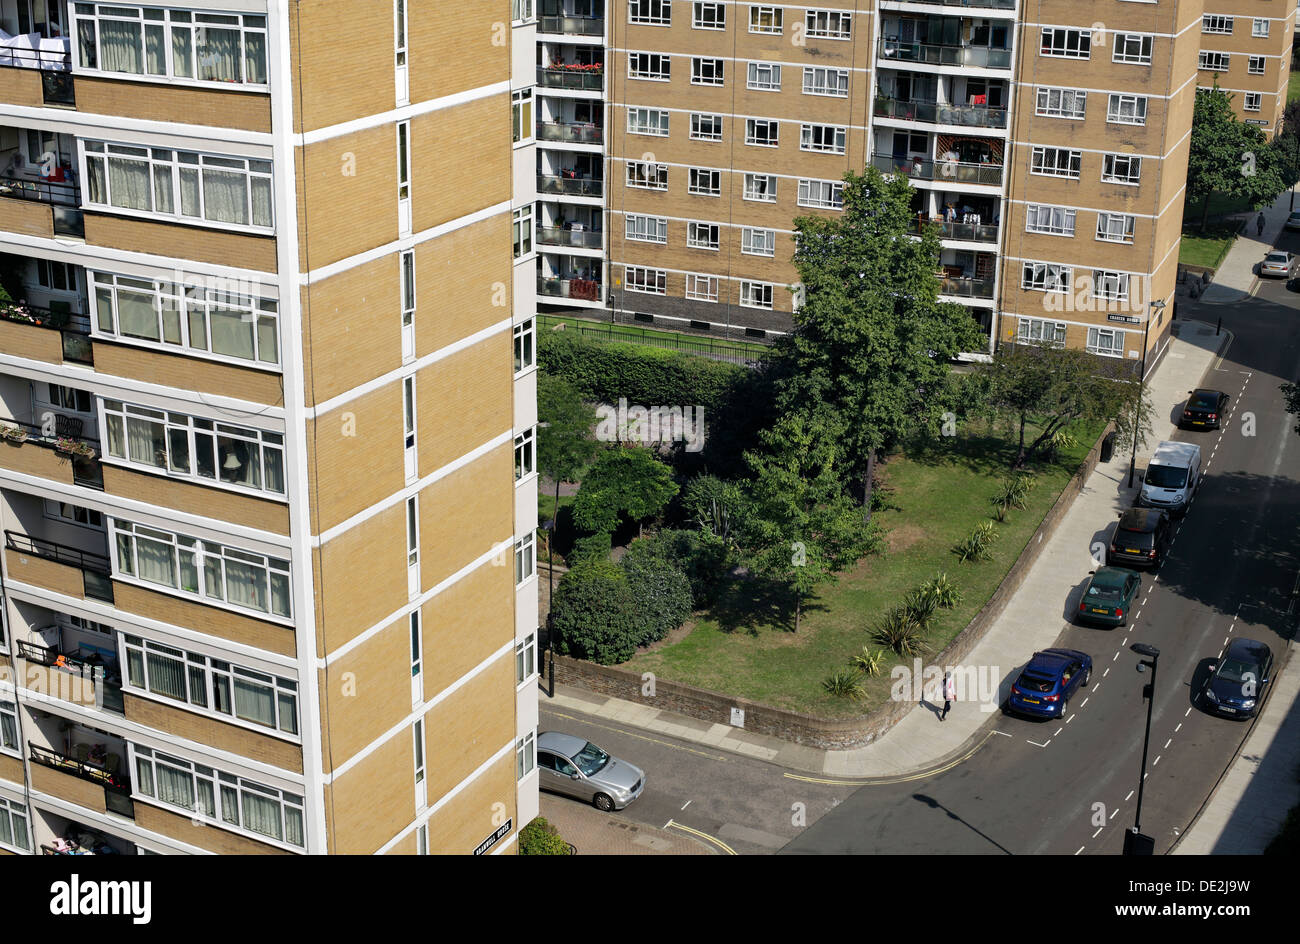 Mirando hacia abajo sobre la parte de los Jardines de Churchill Estate, Pimlico, Londres - bloques de viviendas de varios pisos con espacios verdes entre ellos. Foto de stock